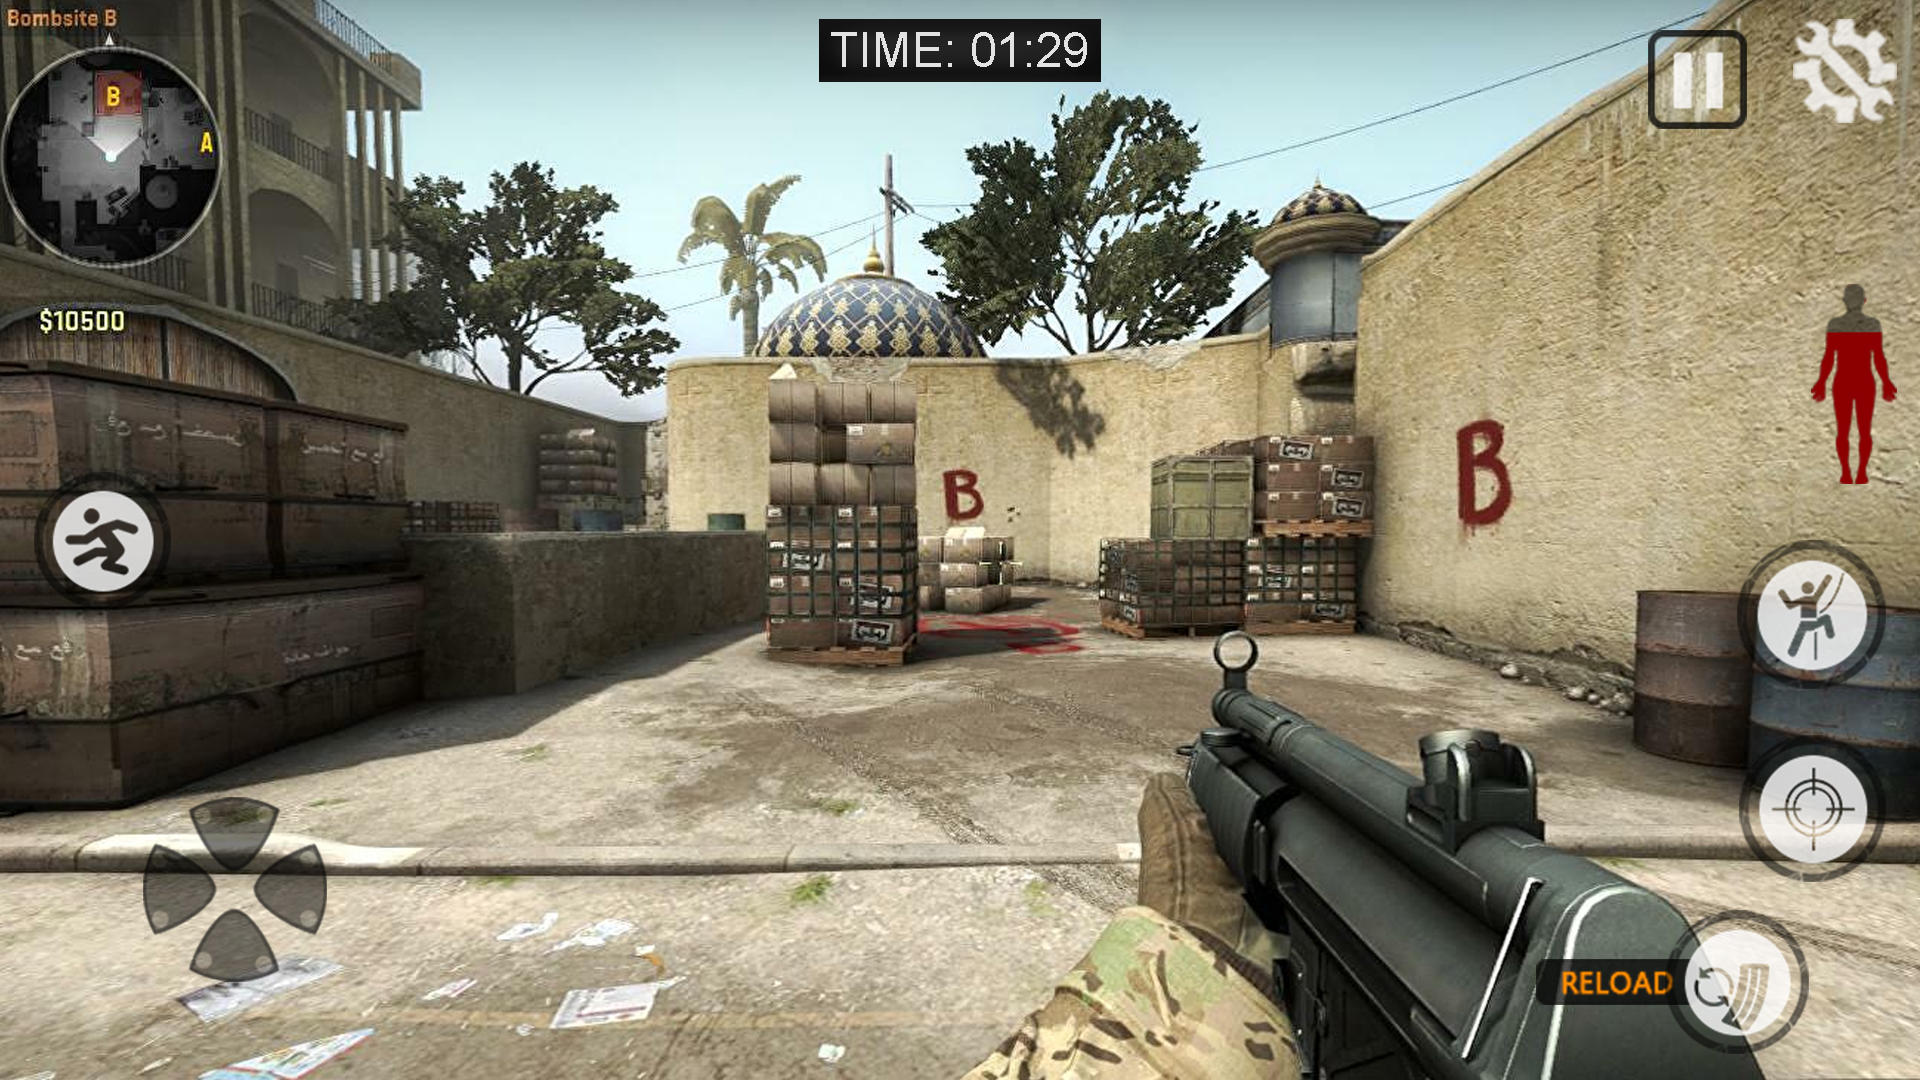 Screenshot 1 of Стрельба из пистолета: игры FPS 1.0.1